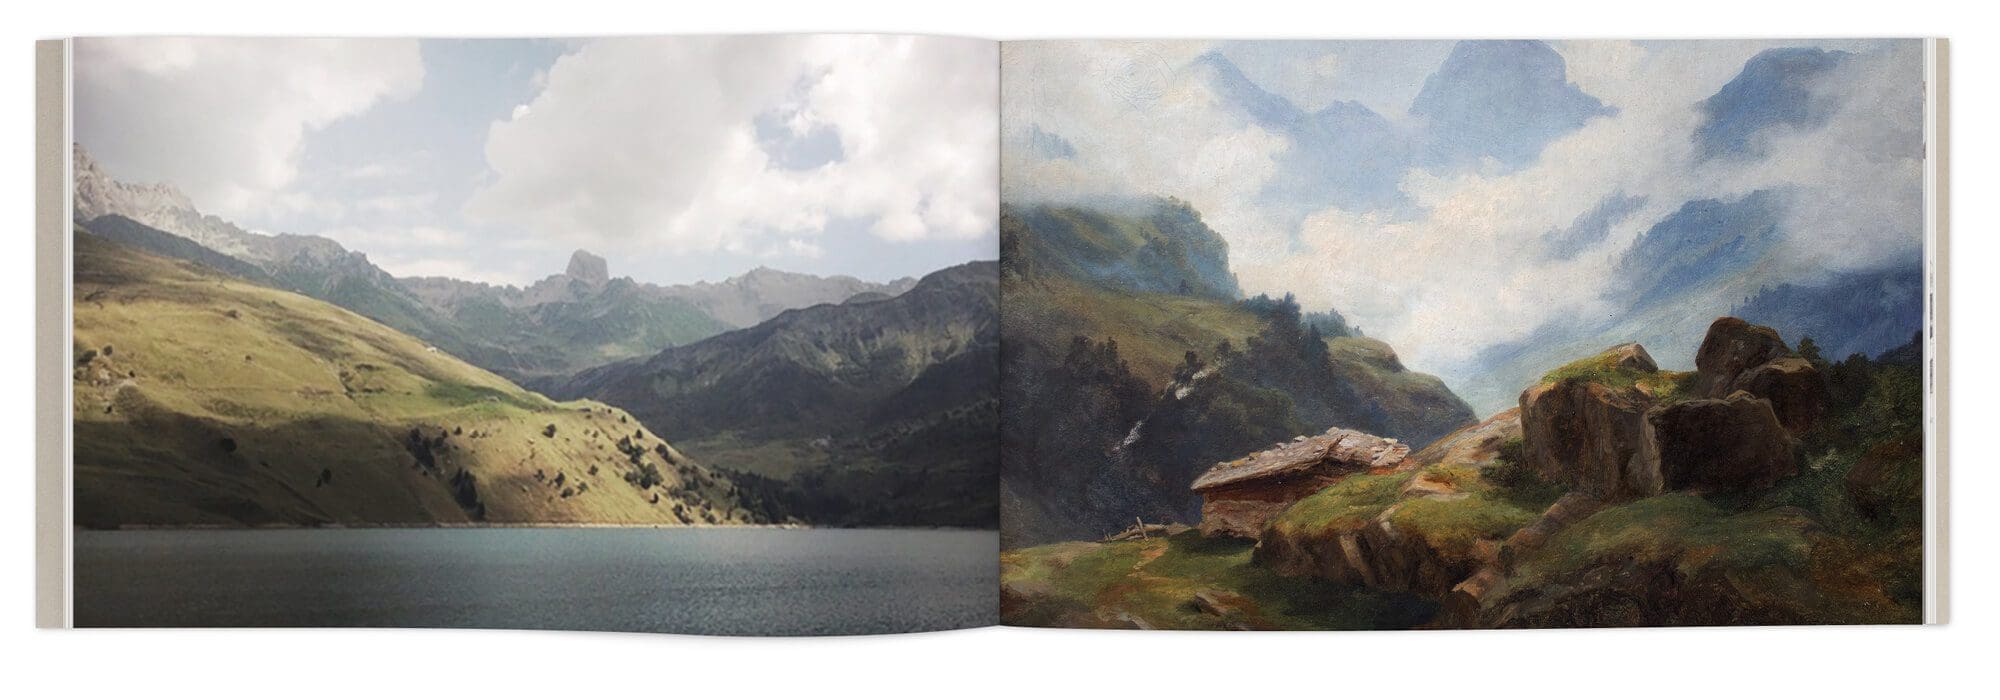 Double page de peinture de paysage de montagne, inspiration d'Hélène Muheim, direction artistique IchetKar